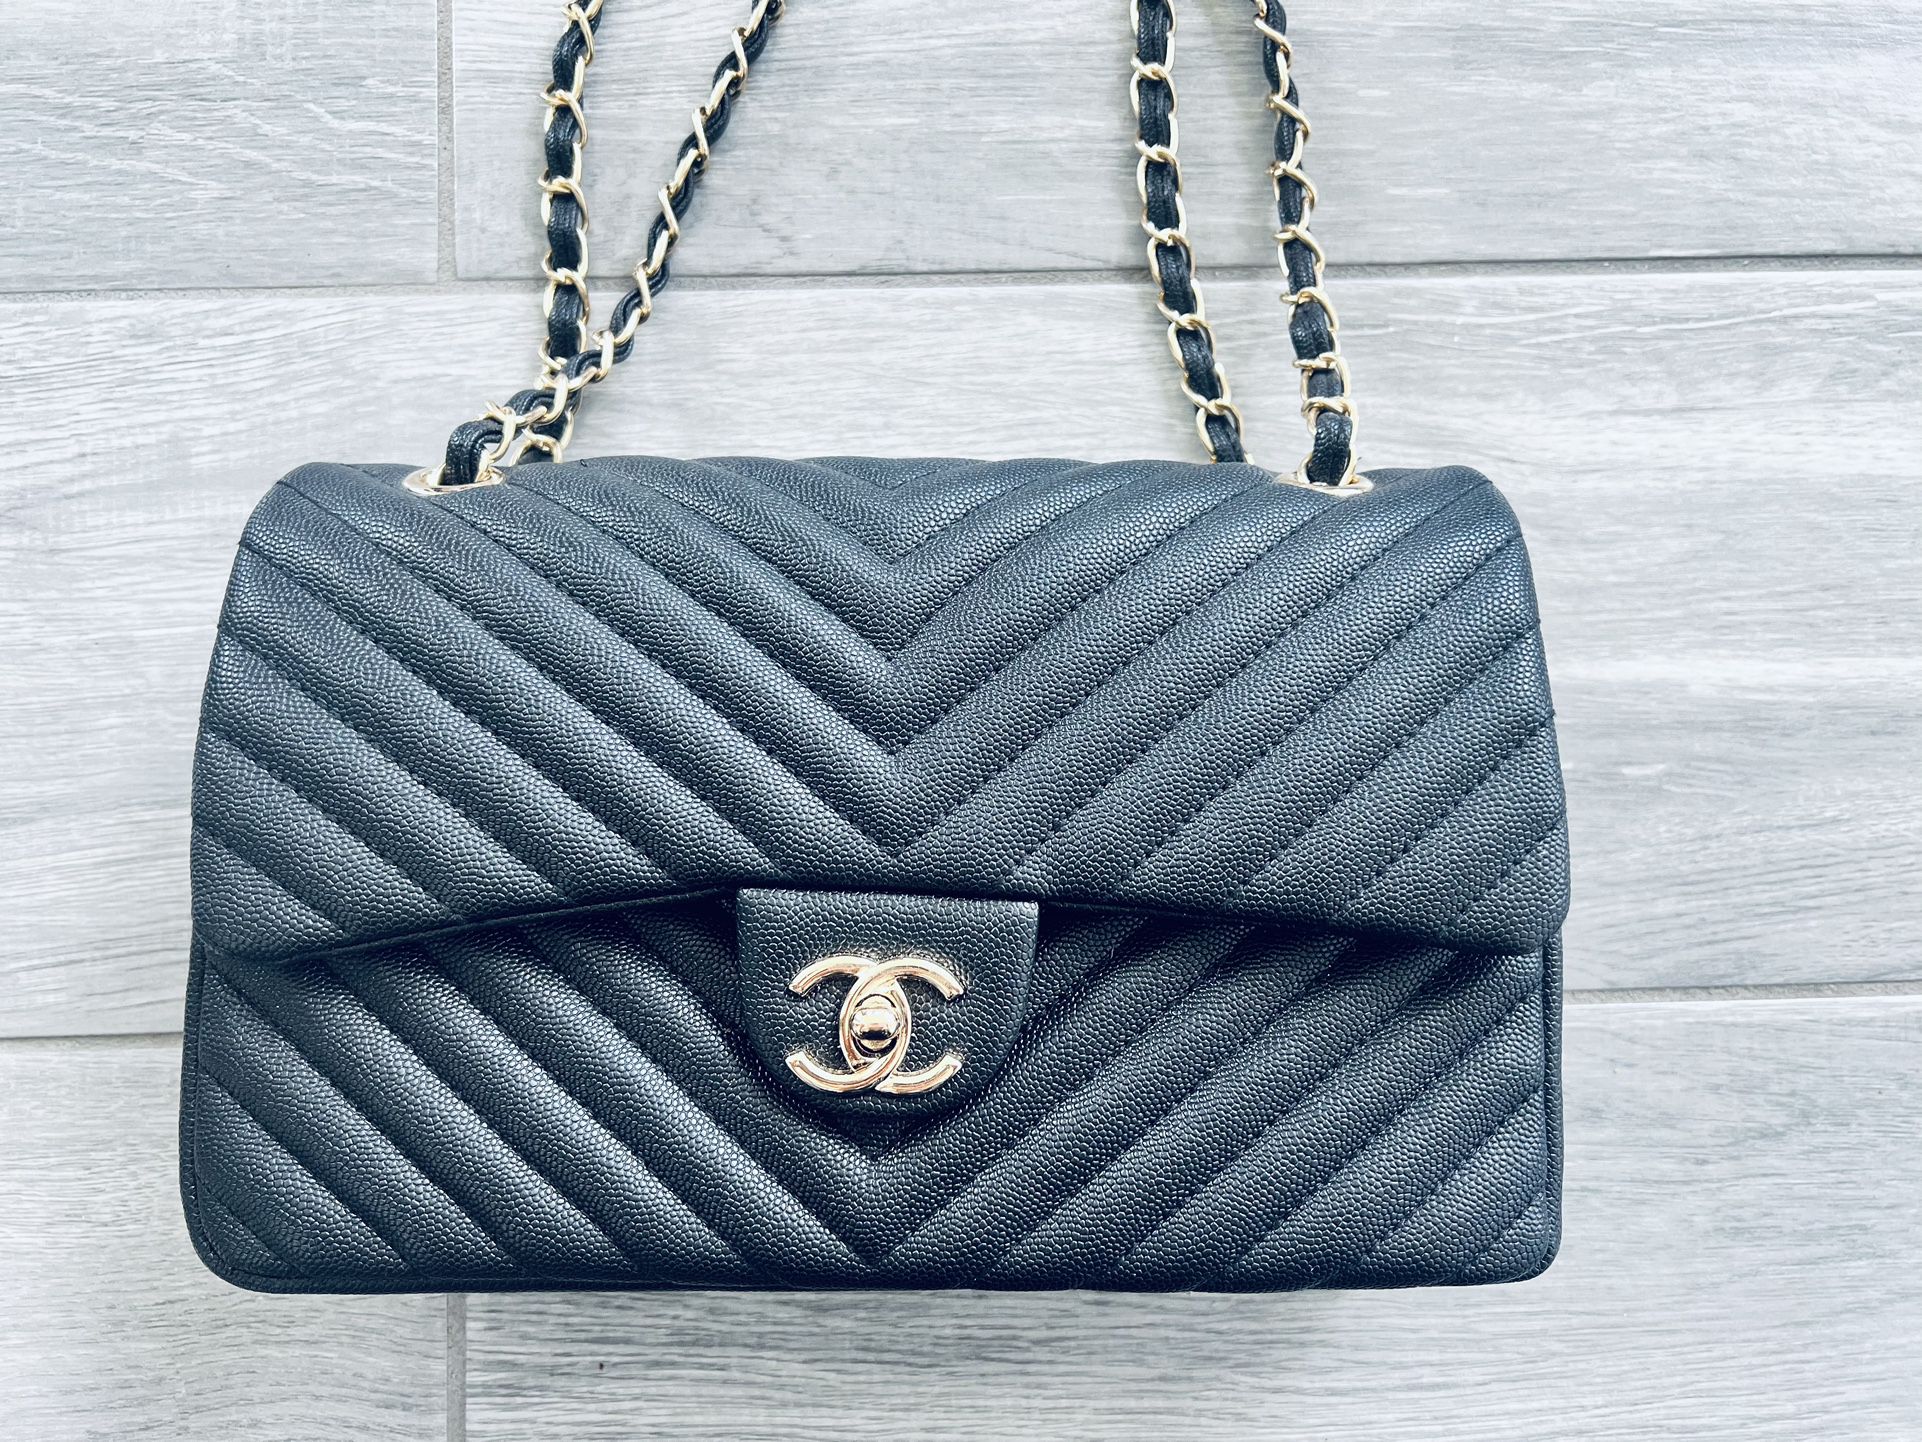 Chanel Bag, Chanel Purse, Chanel Handbag, Chanel Caviar Bag